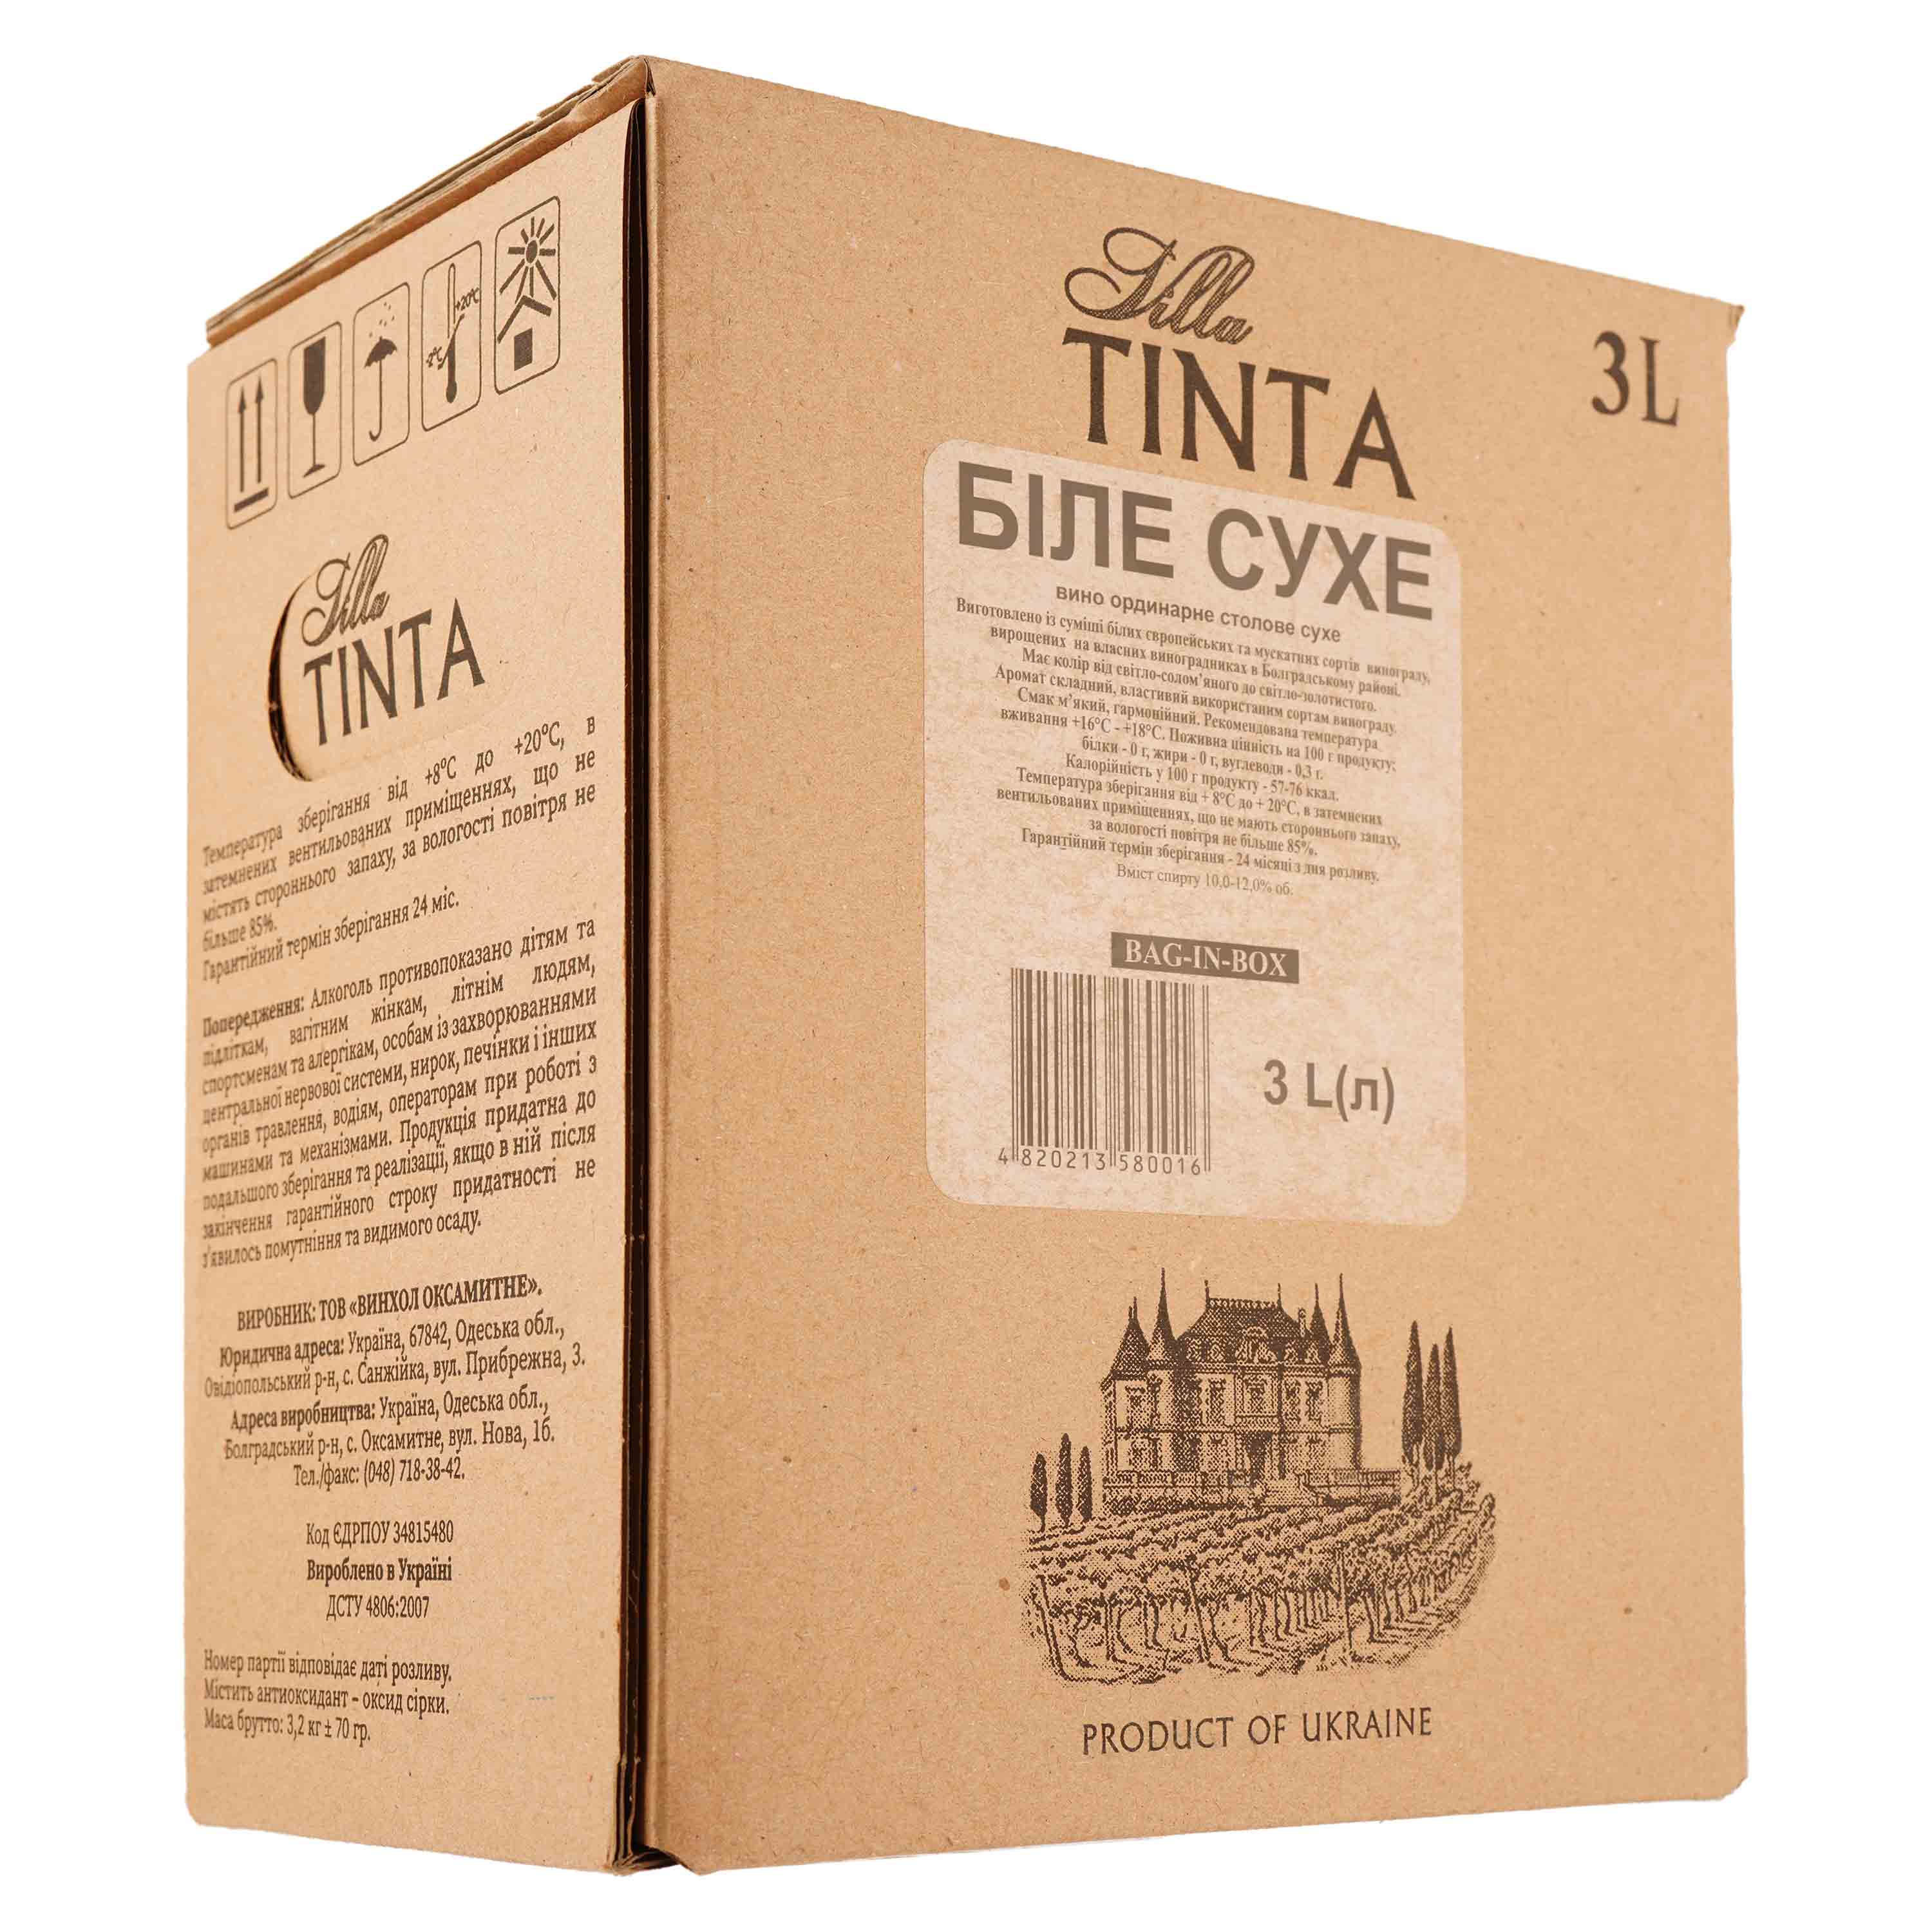 Вино Villa Tinta, белое, сухое, 10-12%, 3 л (8000019387889) - фото 1